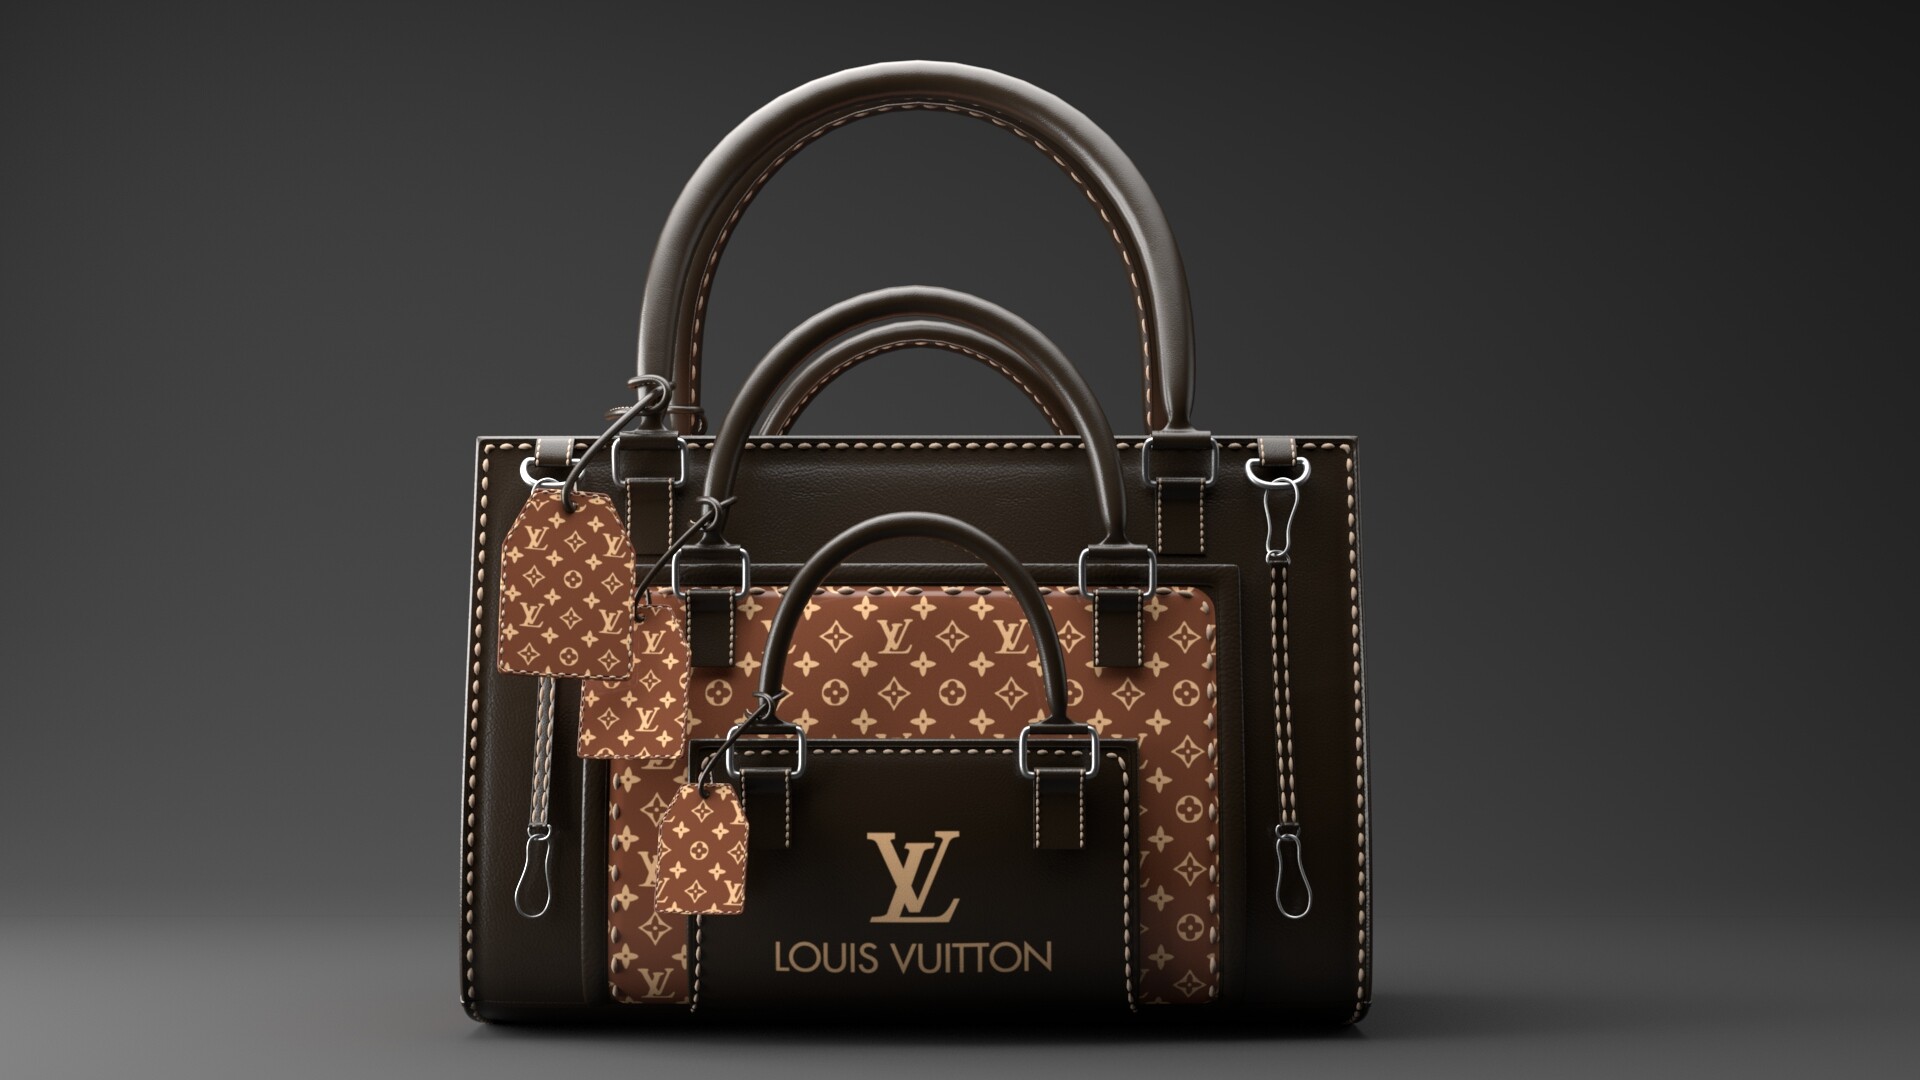 ArtStation - Louis Vuitton